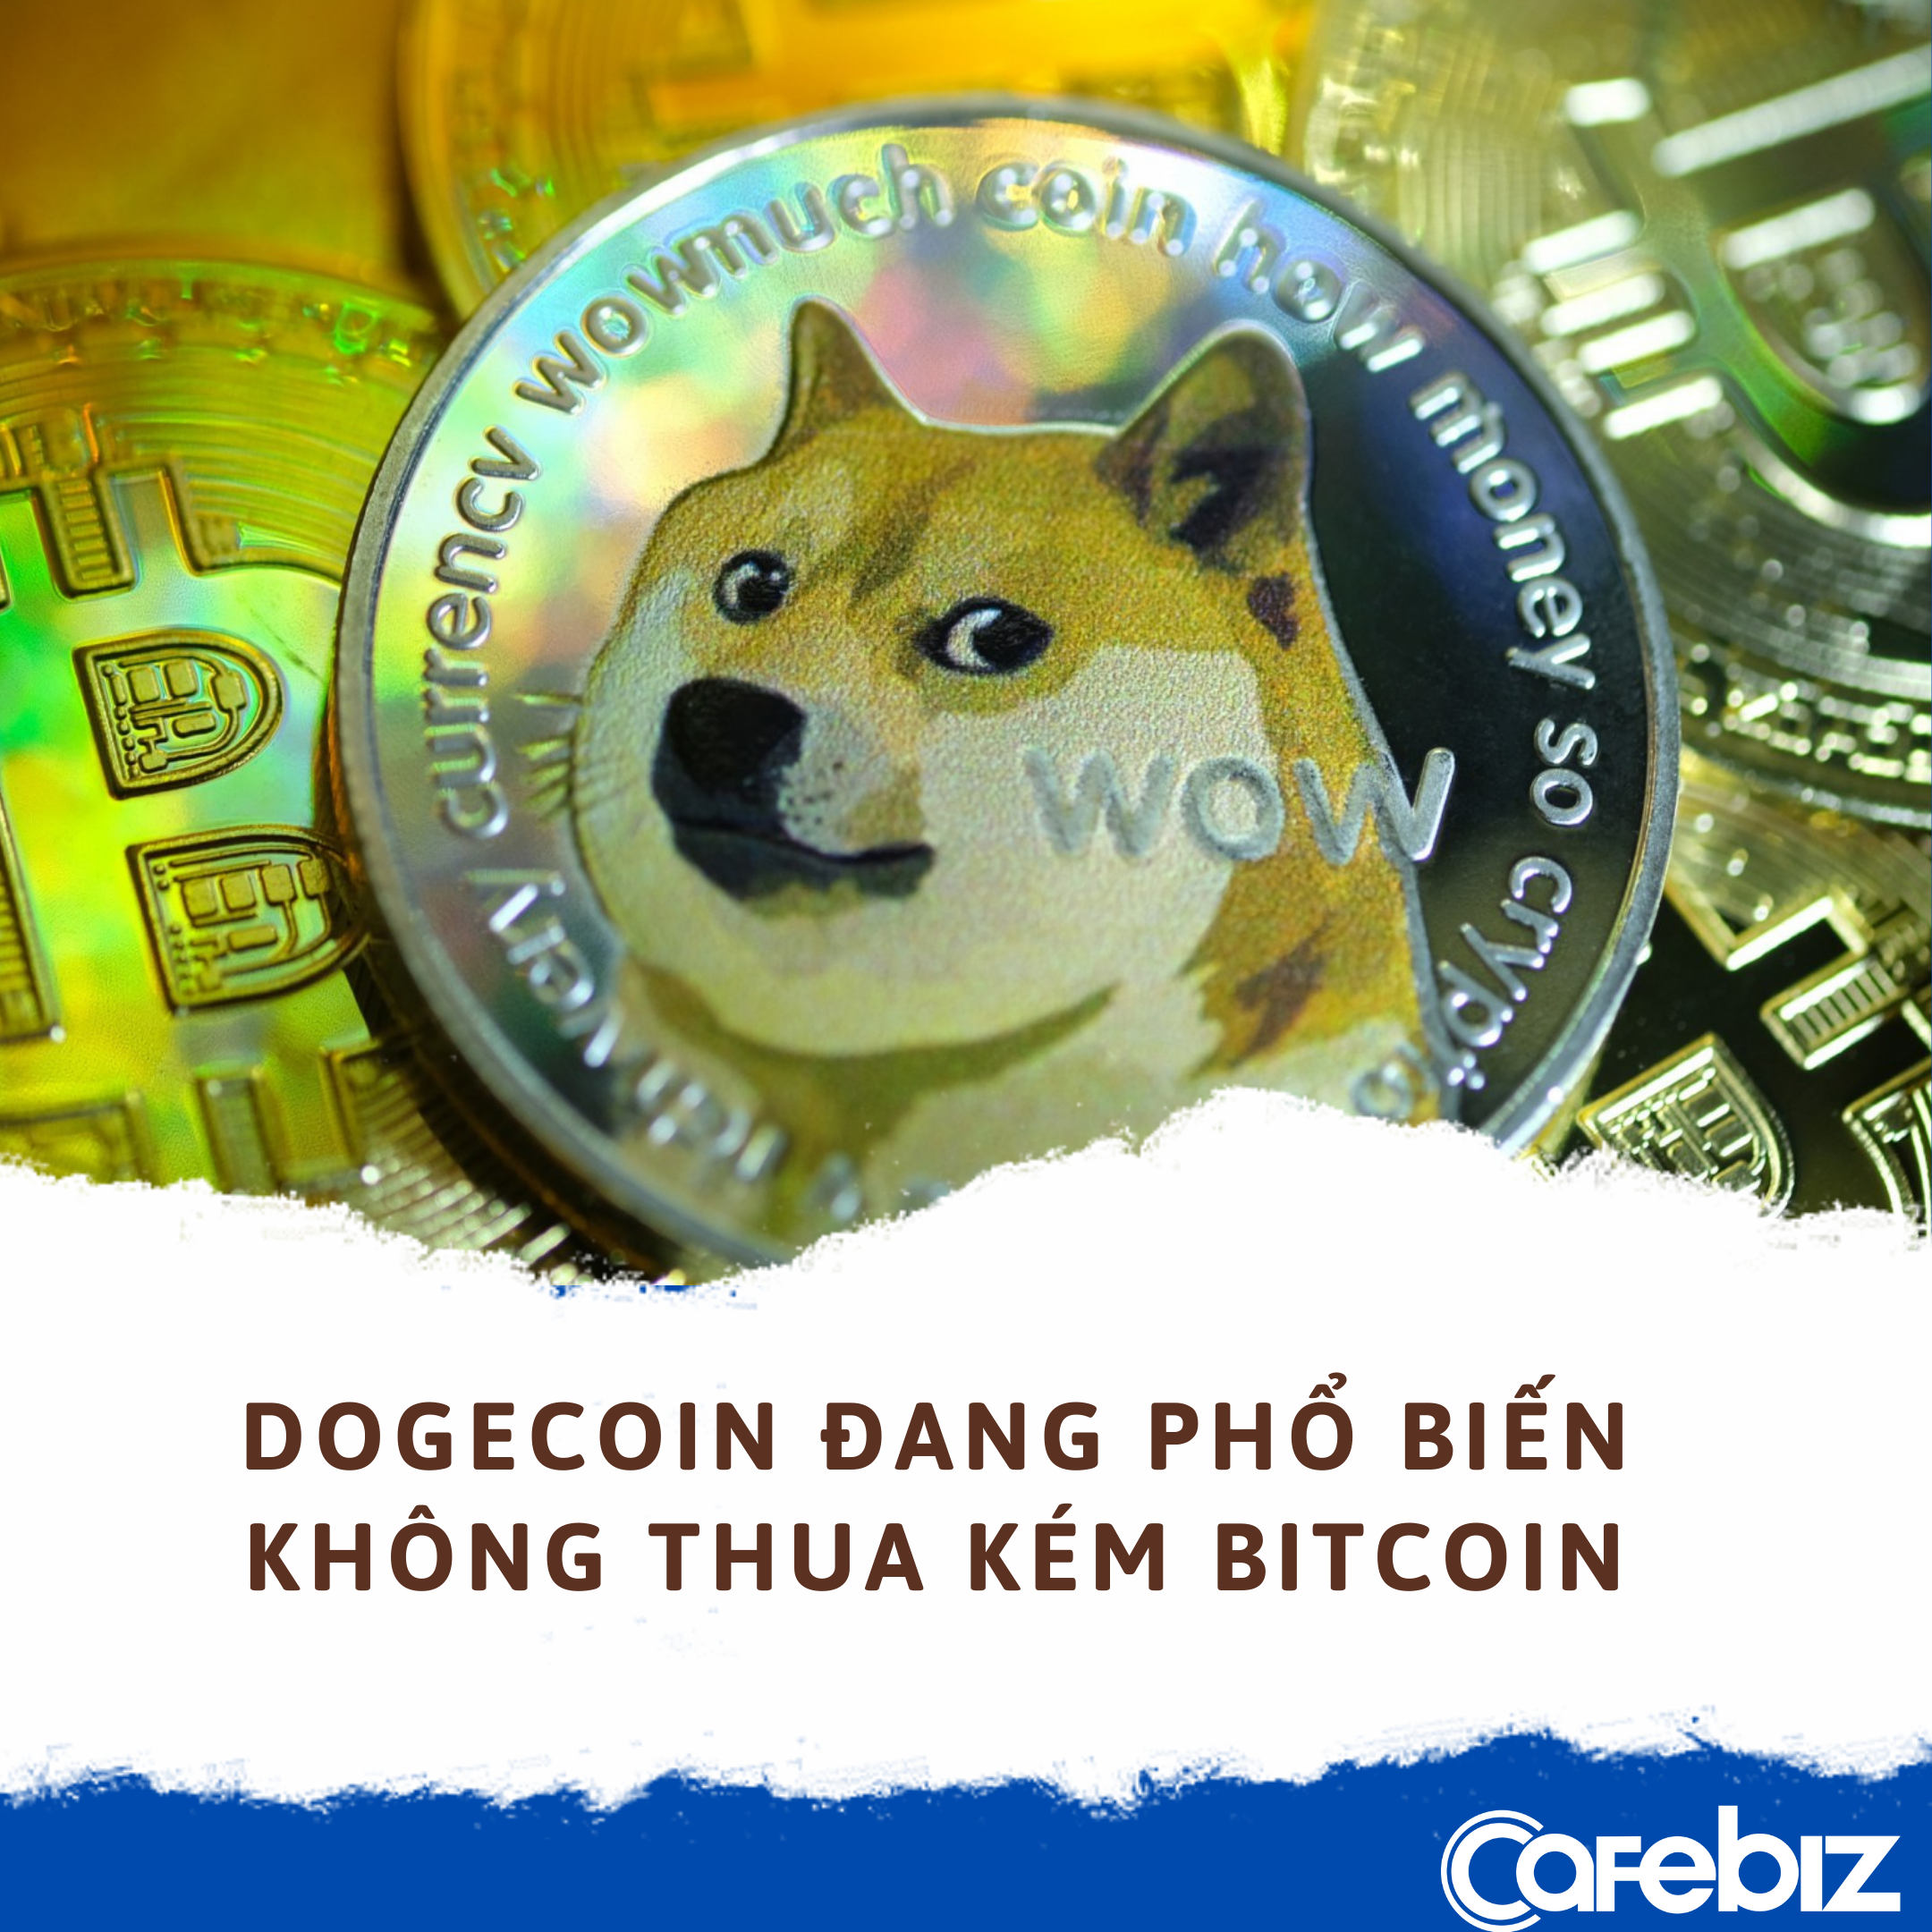 Dogecoin: Đầu tư tiền điện tử đang trở thành trào lưu. Hãy xem hình ảnh này để biết thêm về Dogecoin, một trong những đồng tiền điện tử được công nhận nhất hiện nay.